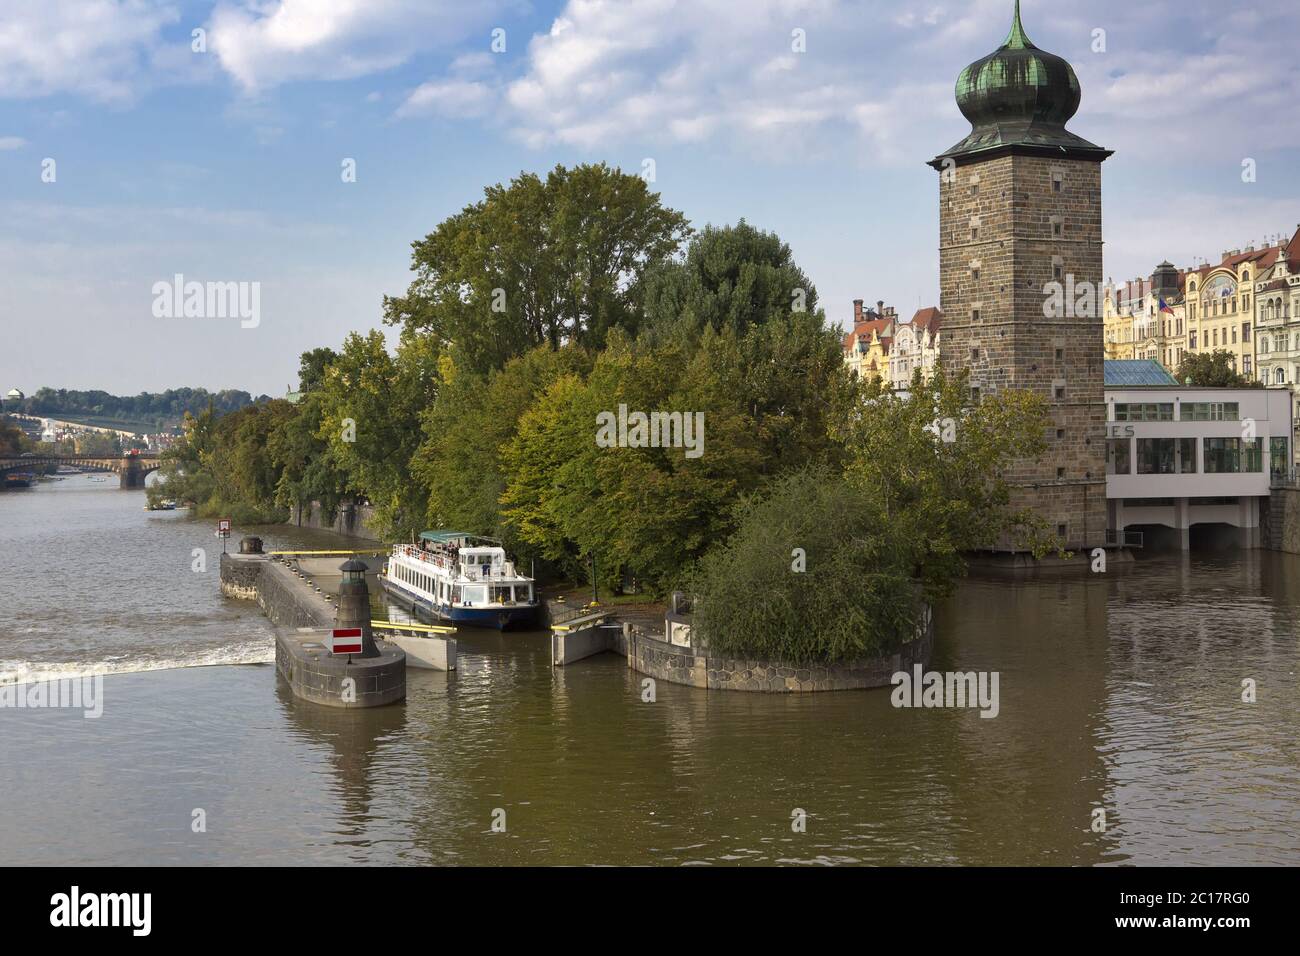 Wanderschiff fährt an einer Schleuse auf der Moldau in Prag, Tschechien vorbei. Stockfoto